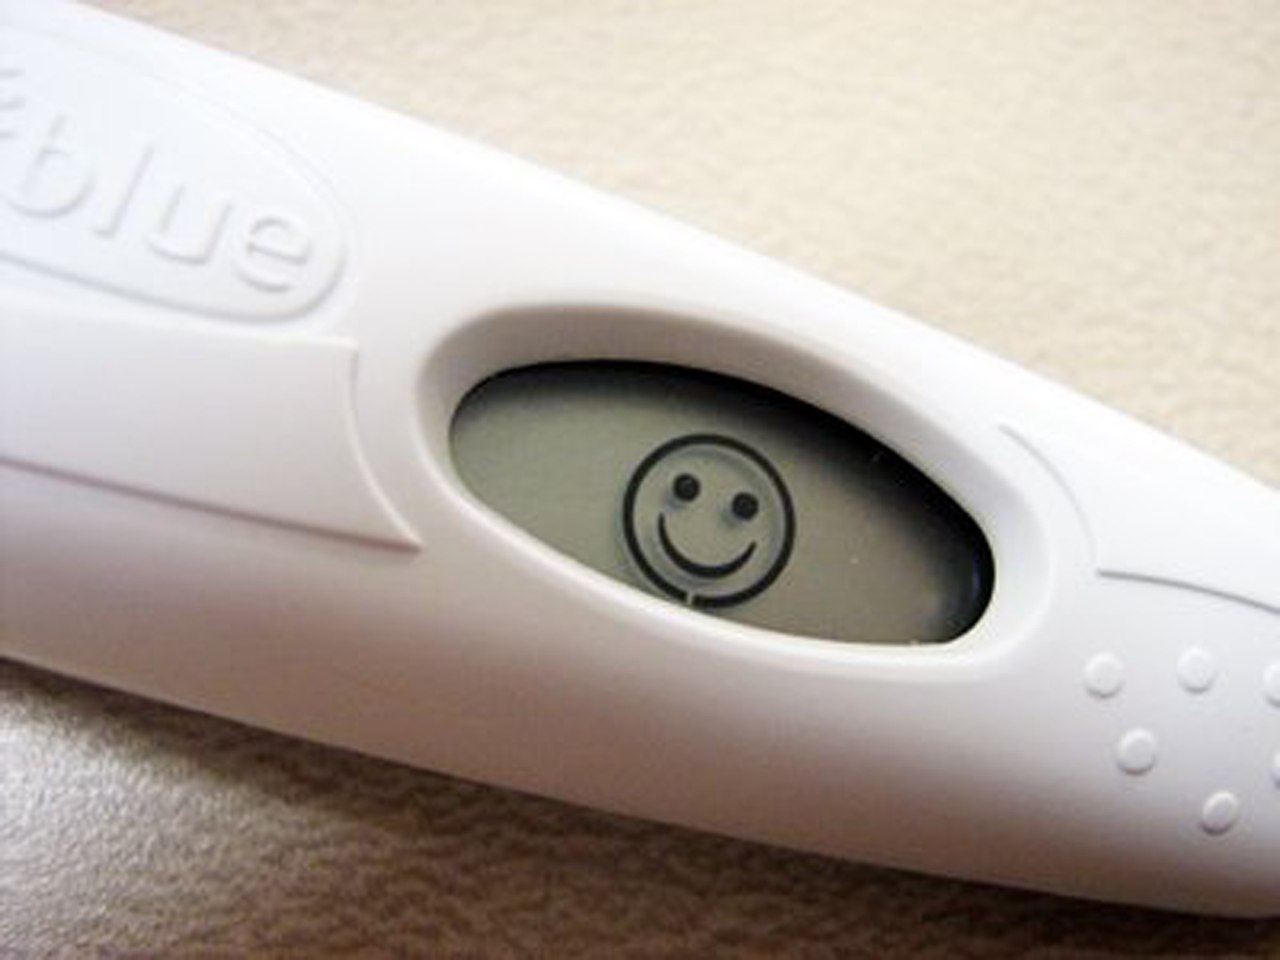 Смешной тест на беременность